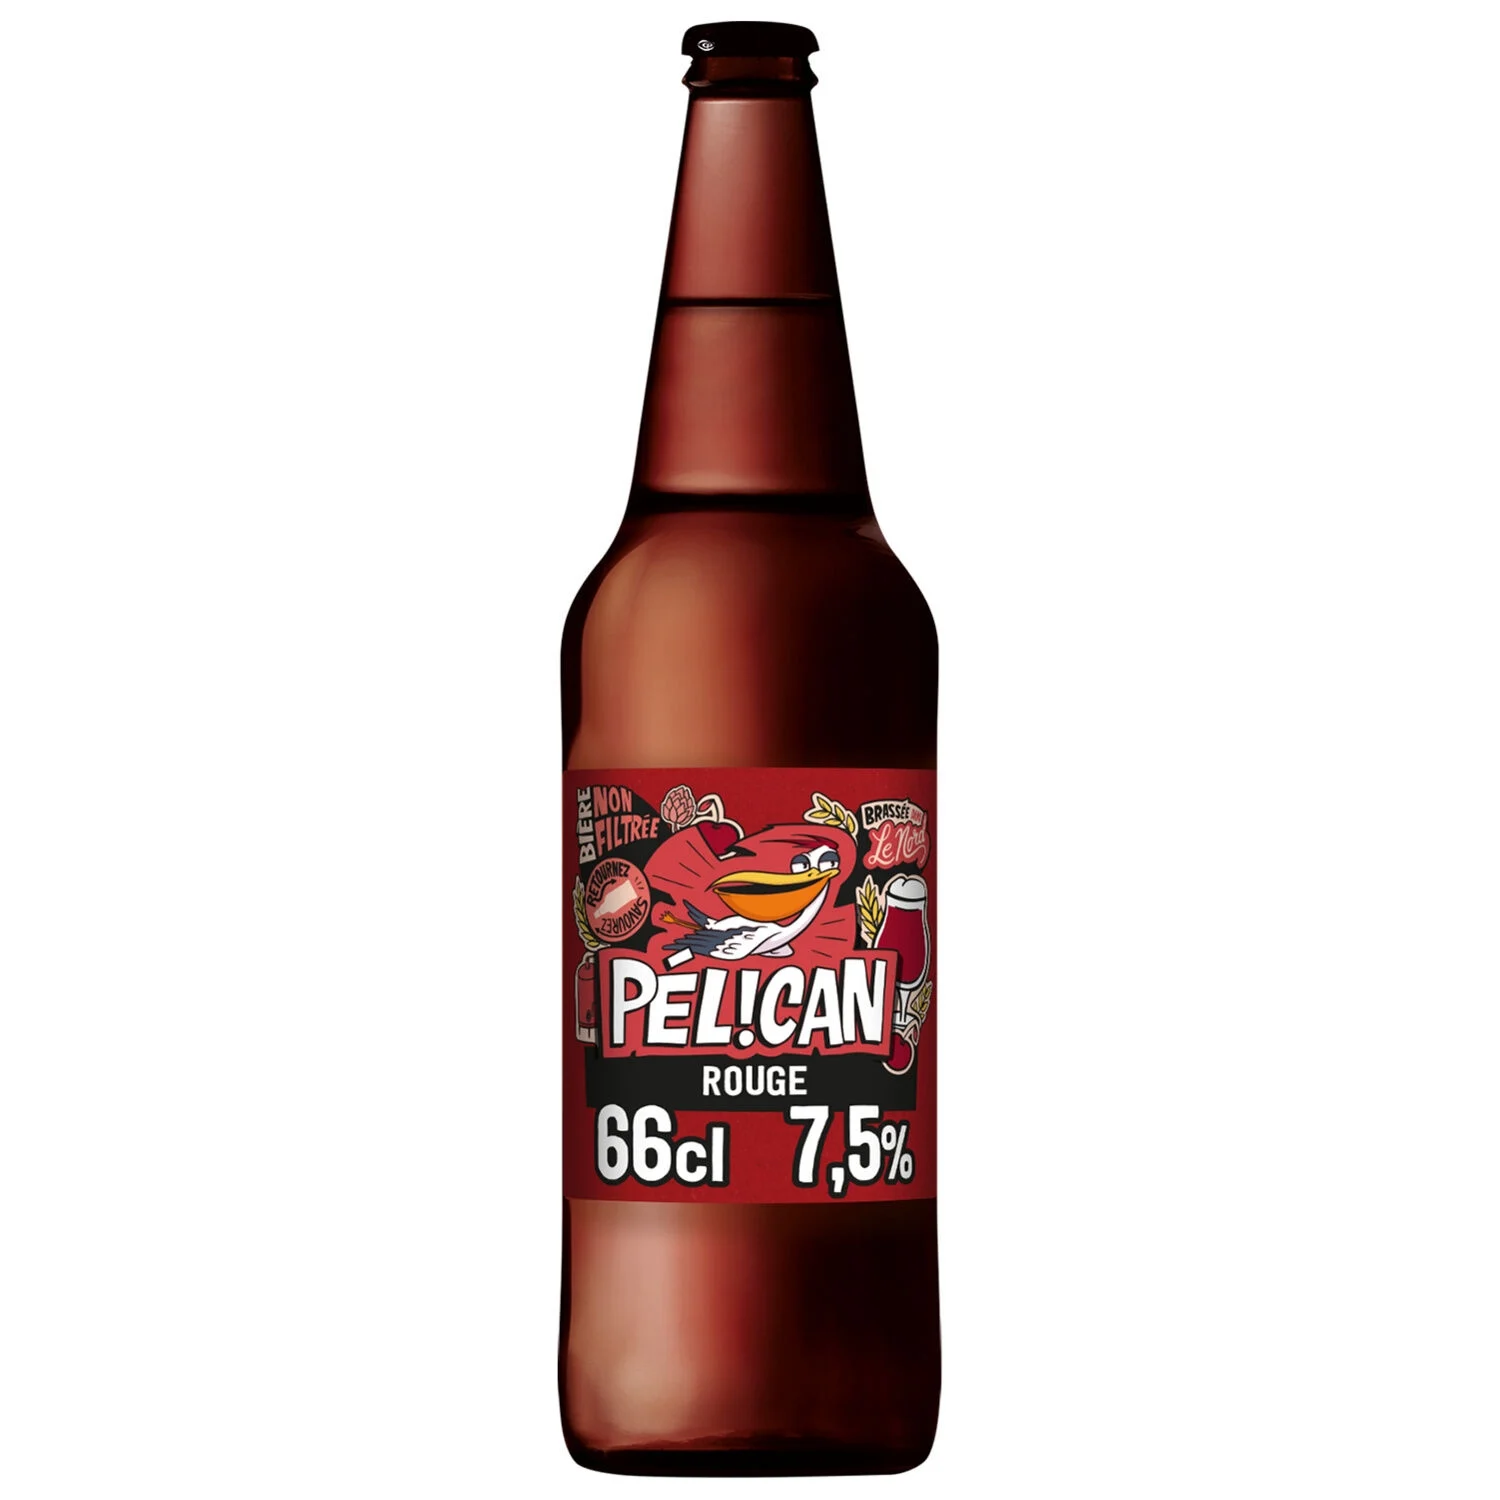 Bière Rouge Aux Cerises Griottes Non Filtrée 66cl 7,5% - Pelican